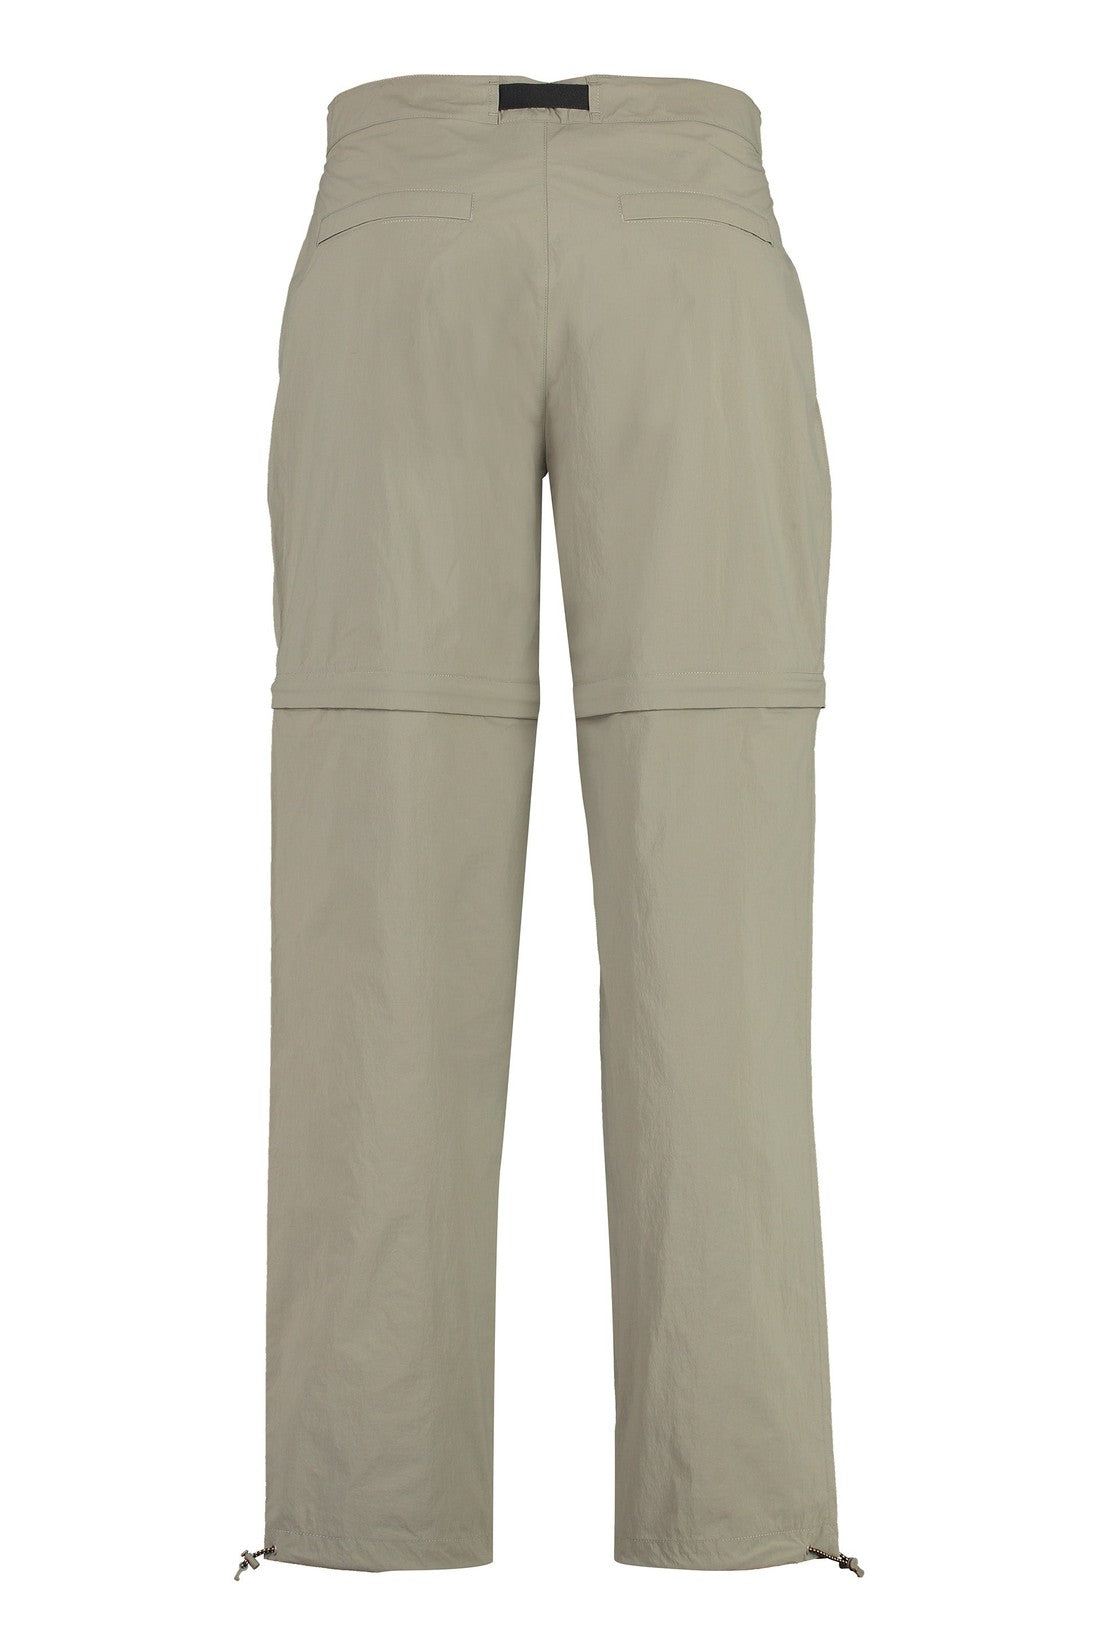 K-Way-OUTLET-SALE-Sepaux nylon pants-ARCHIVIST